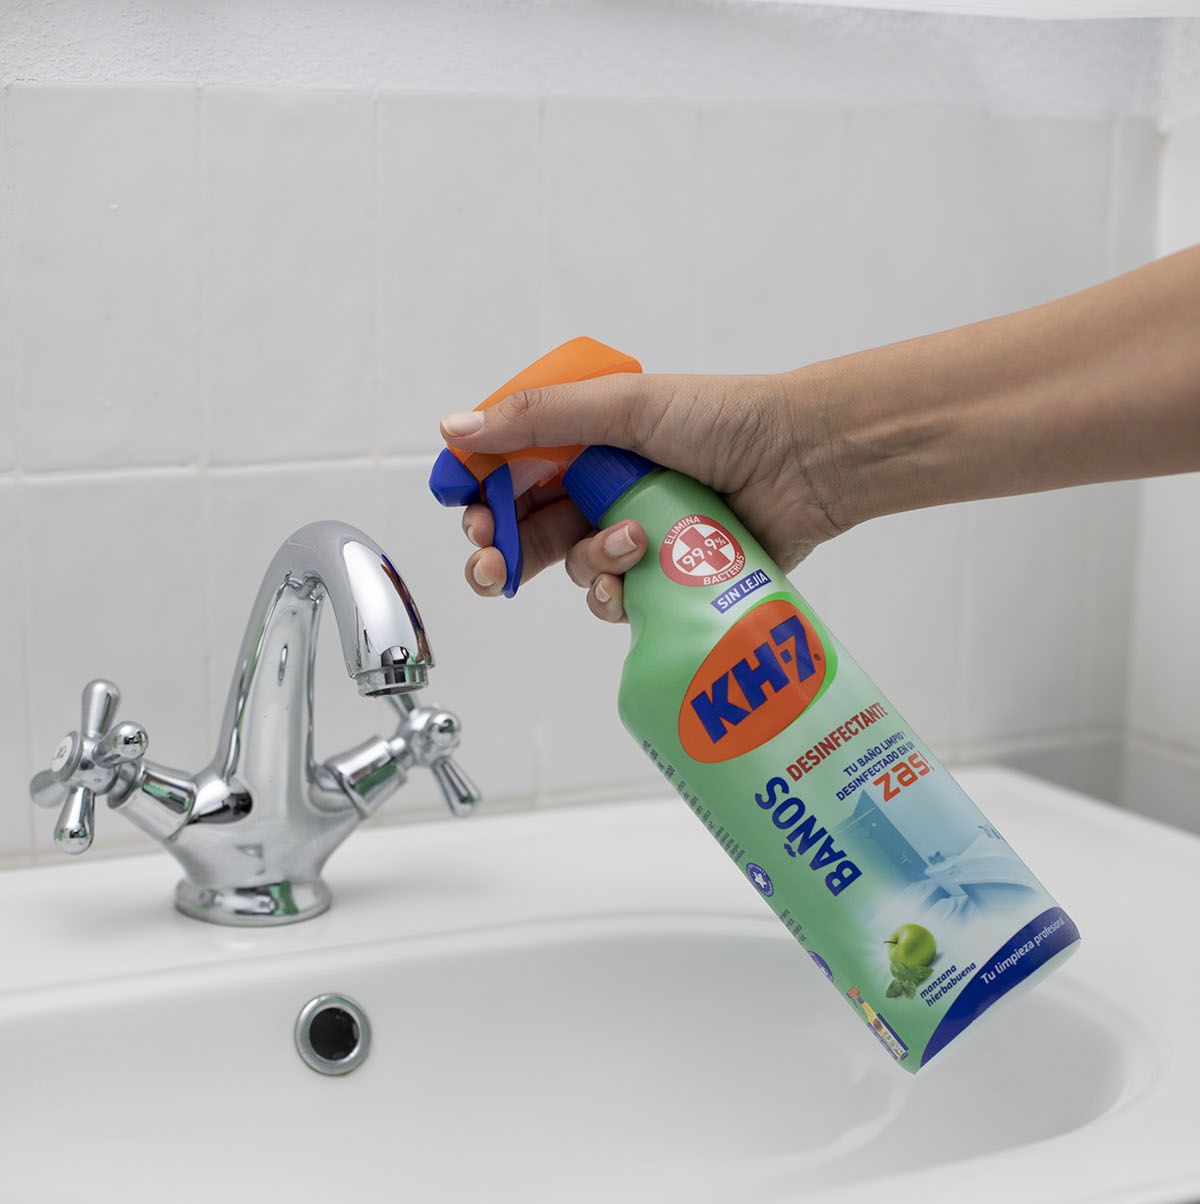 Cómo limpiar y desinfectar el baño [GUÍA SANYTOL]